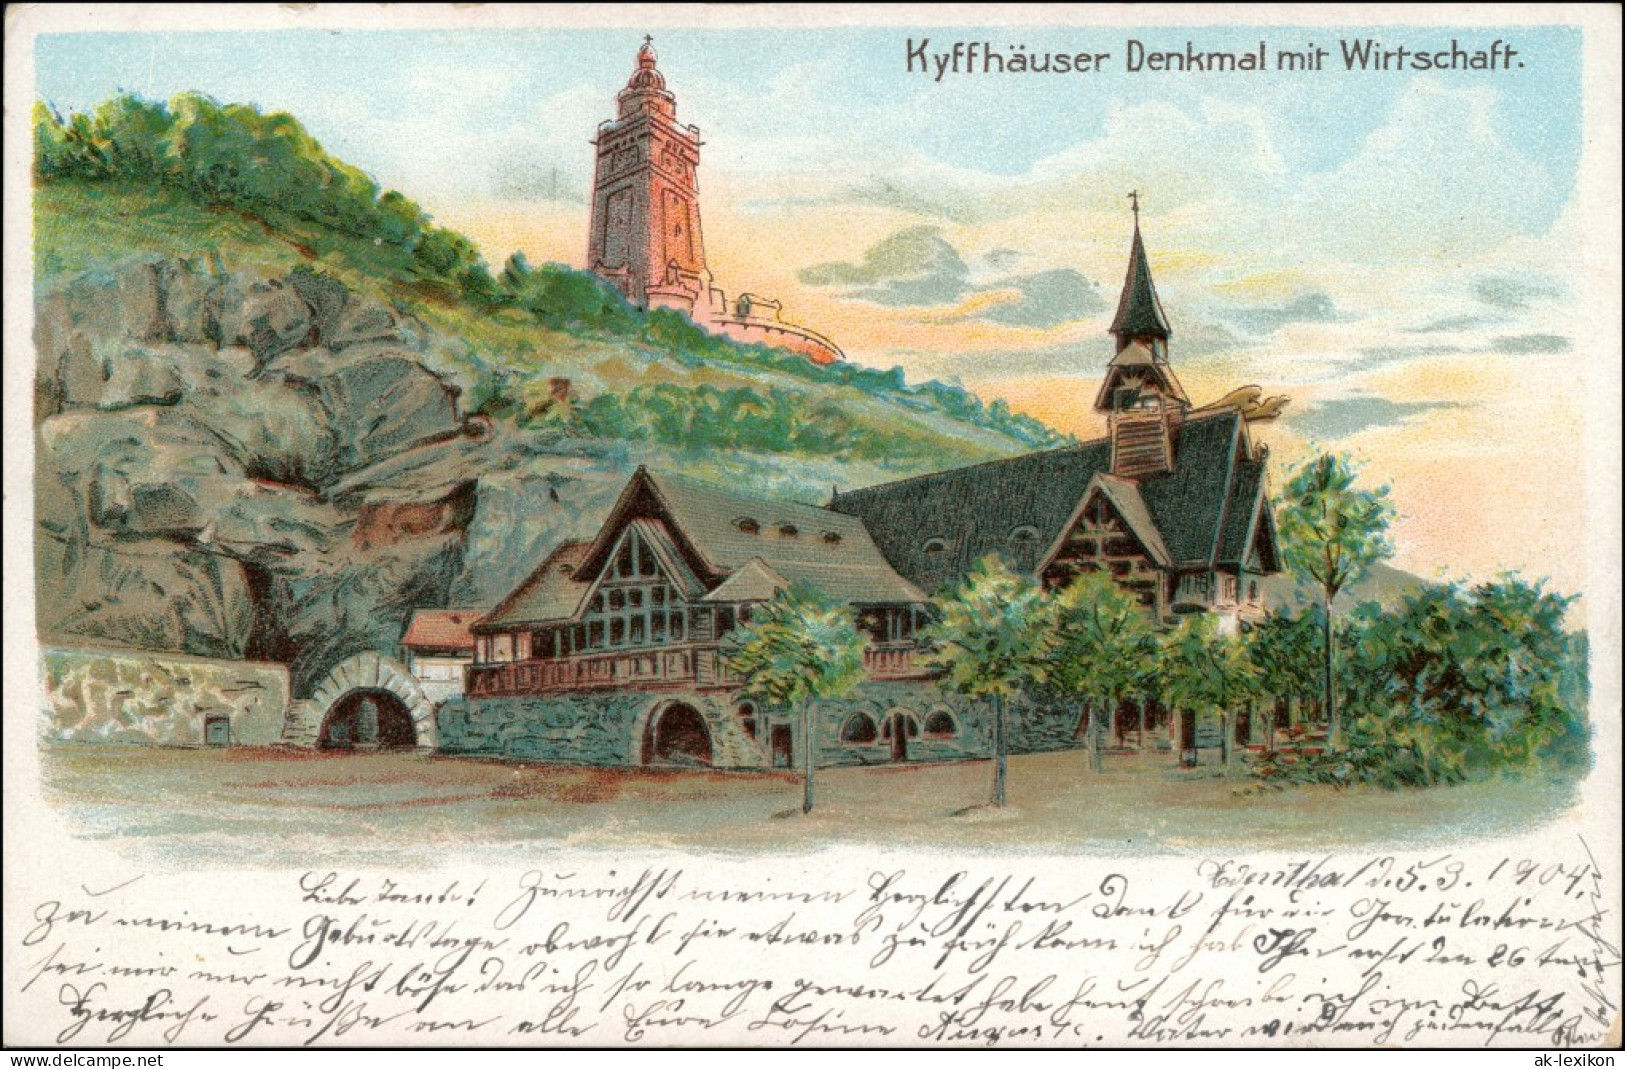 Kelbra (Kyffhäuser) Künstlerlitho: Kyffhäuser Und Wirtschaft 1904  - Kyffhäuser